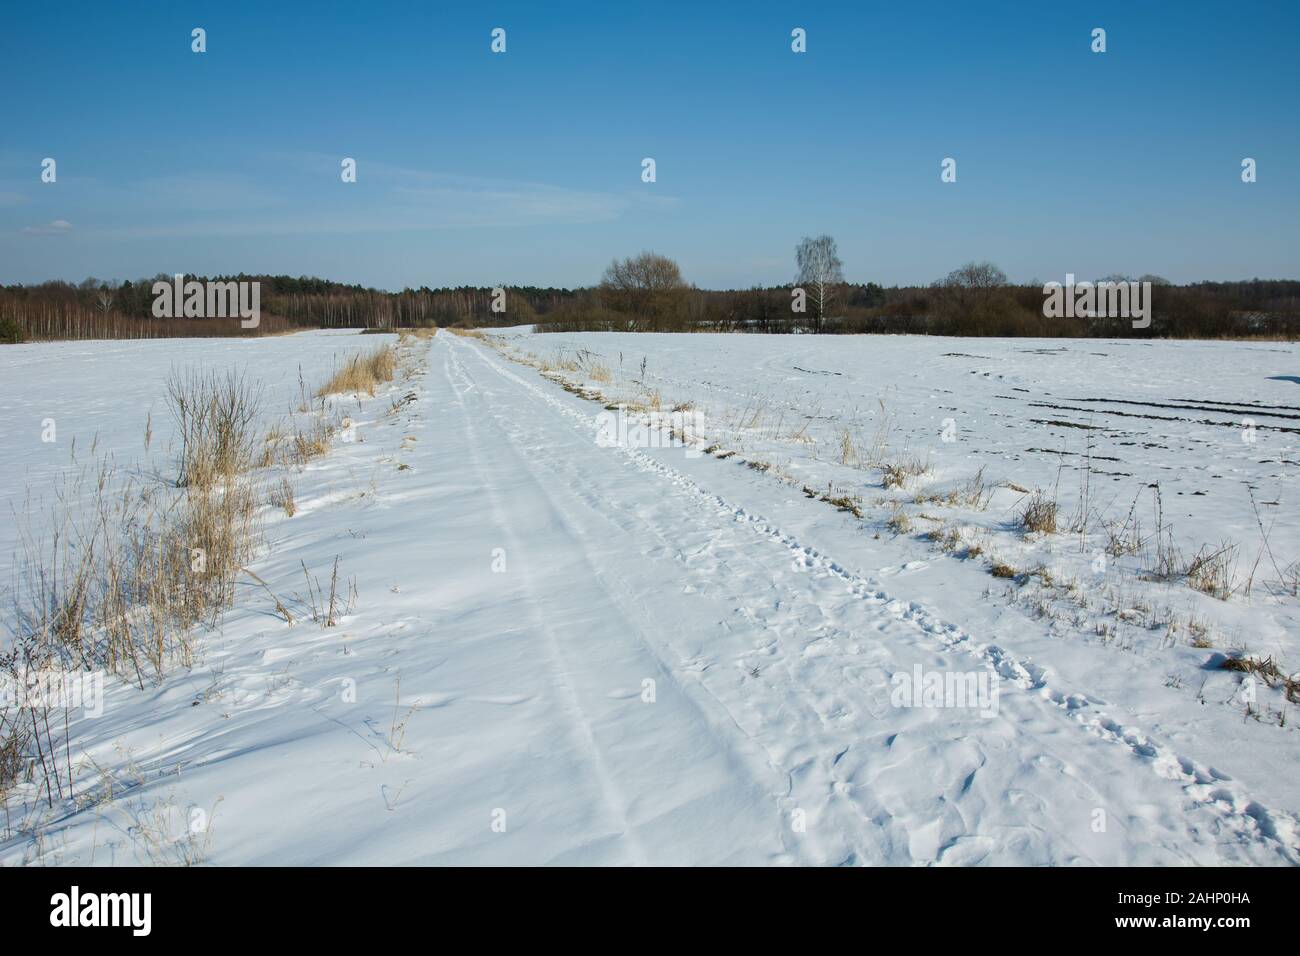 Route de terre couverte de neige, hiver ensoleillé jour Banque D'Images